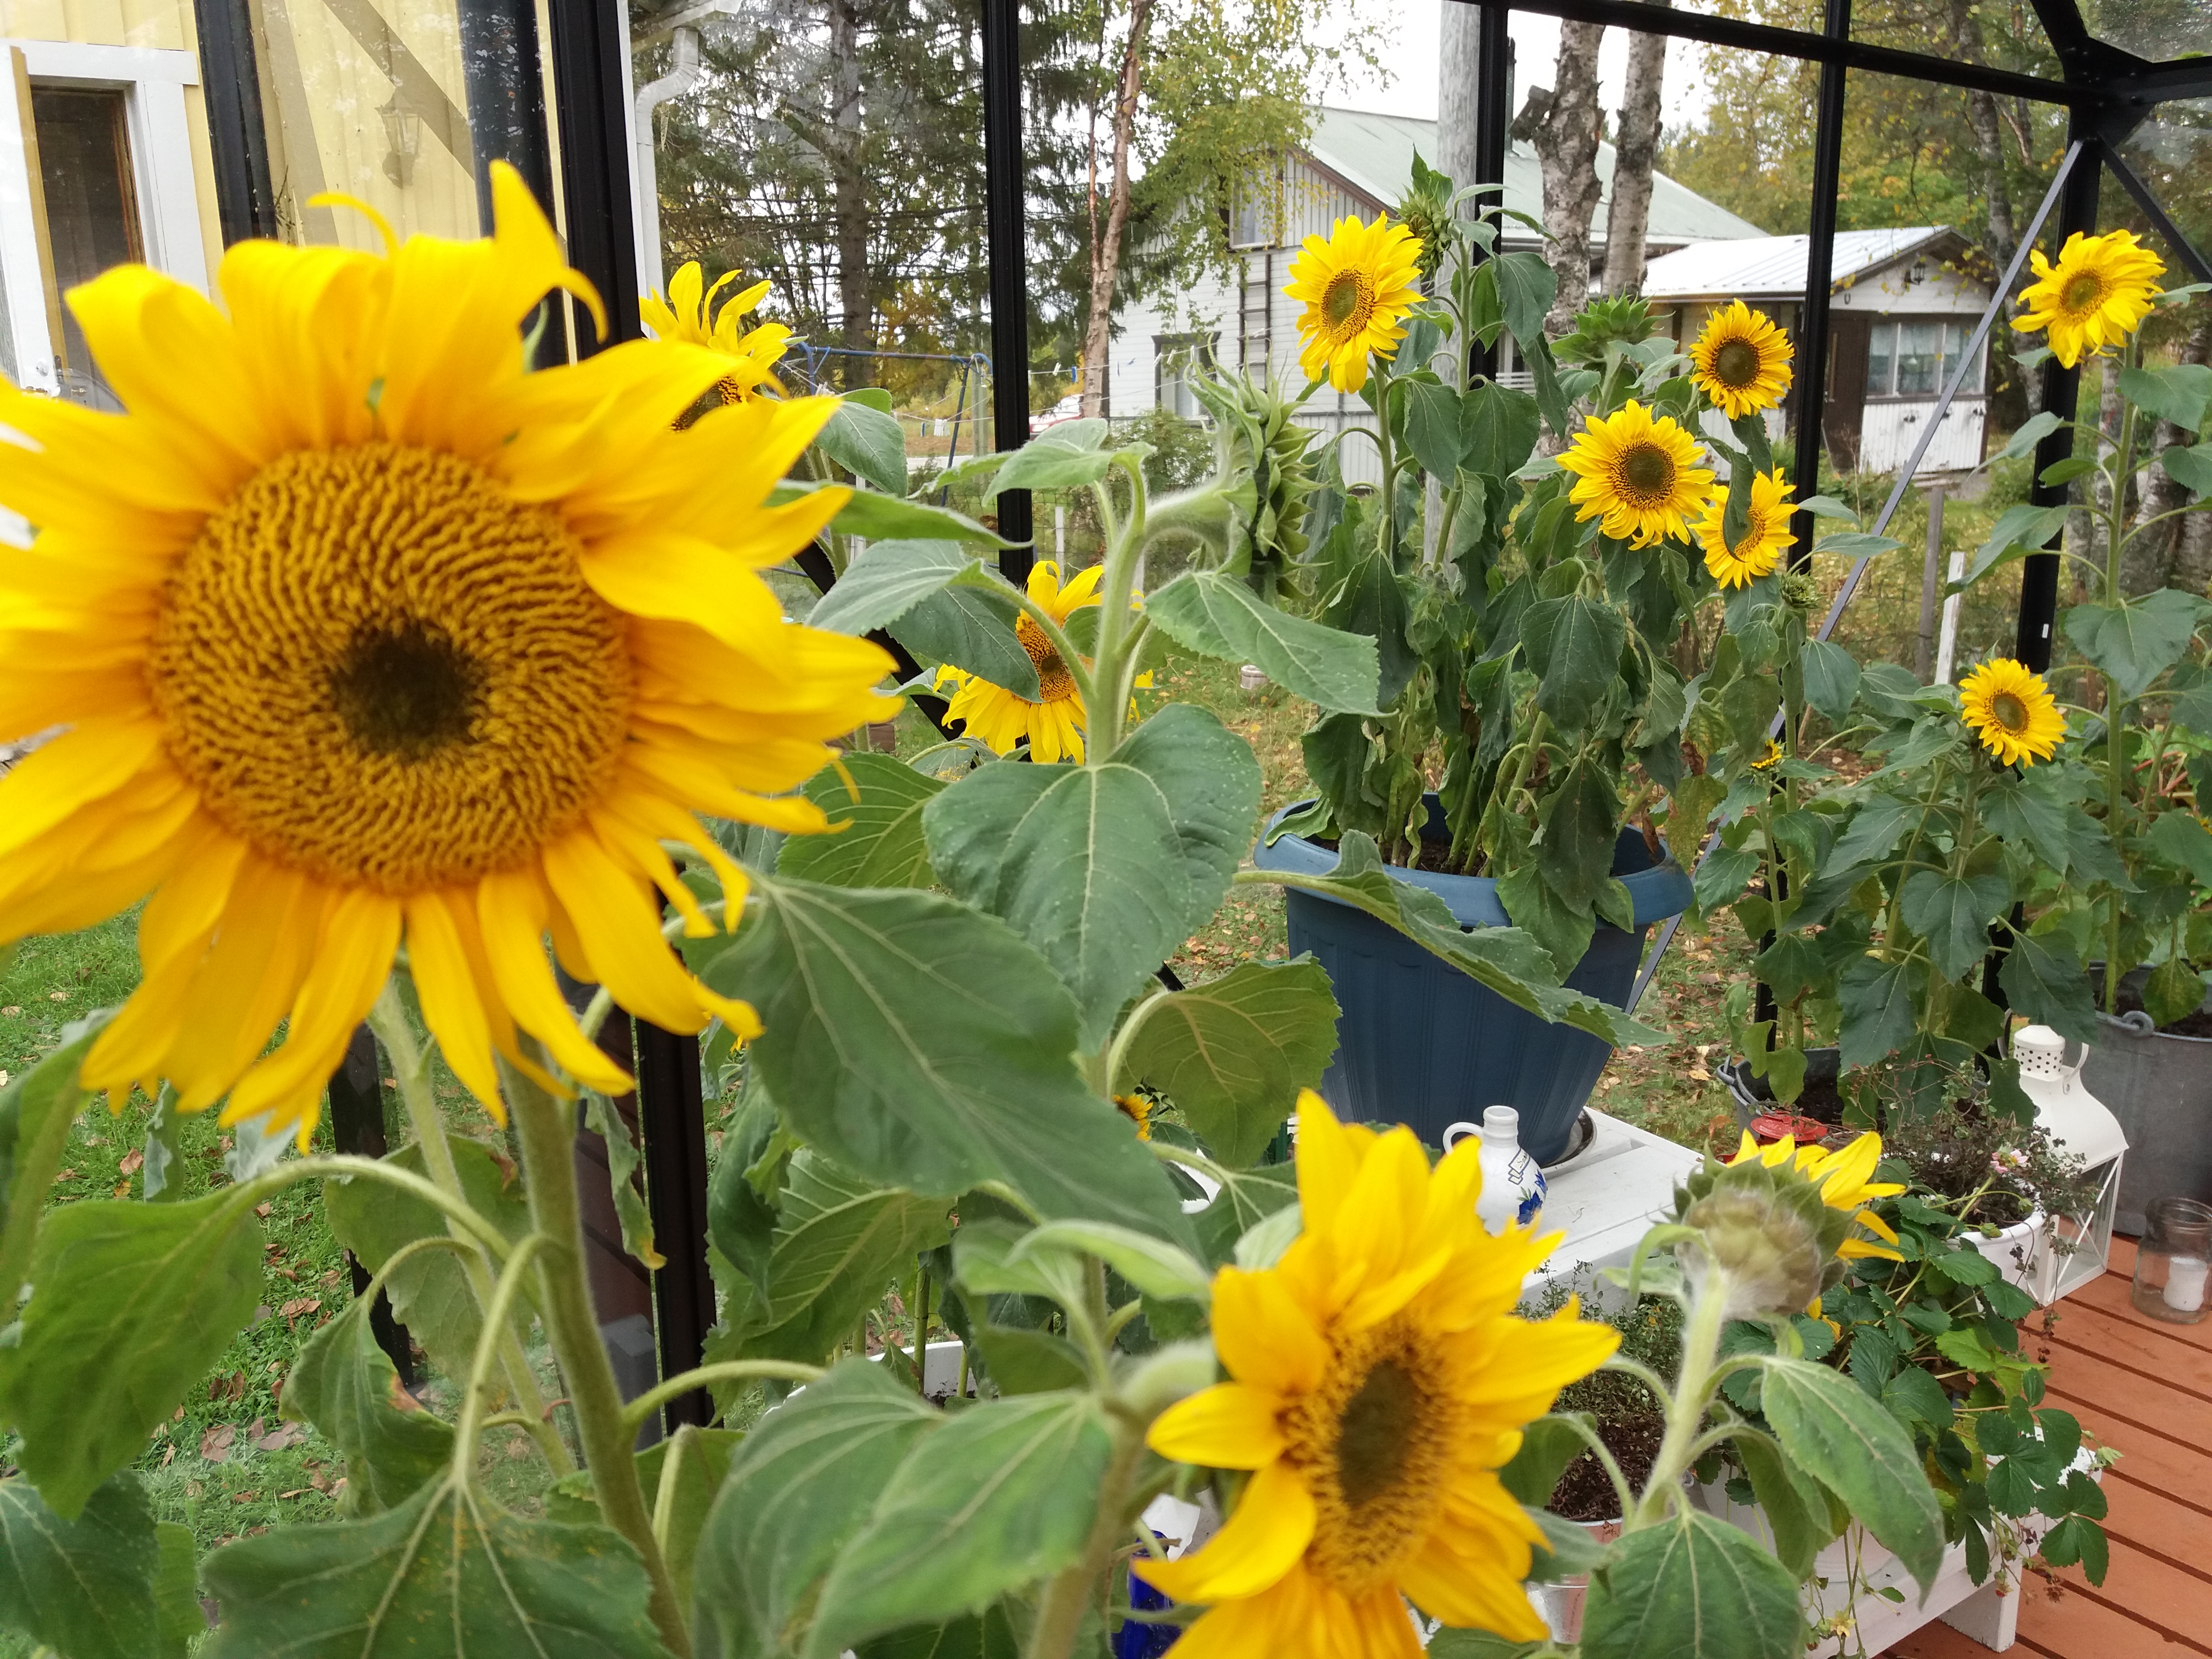 kuvassa keltaisia auringonkukkia purkeissa kasvamassa